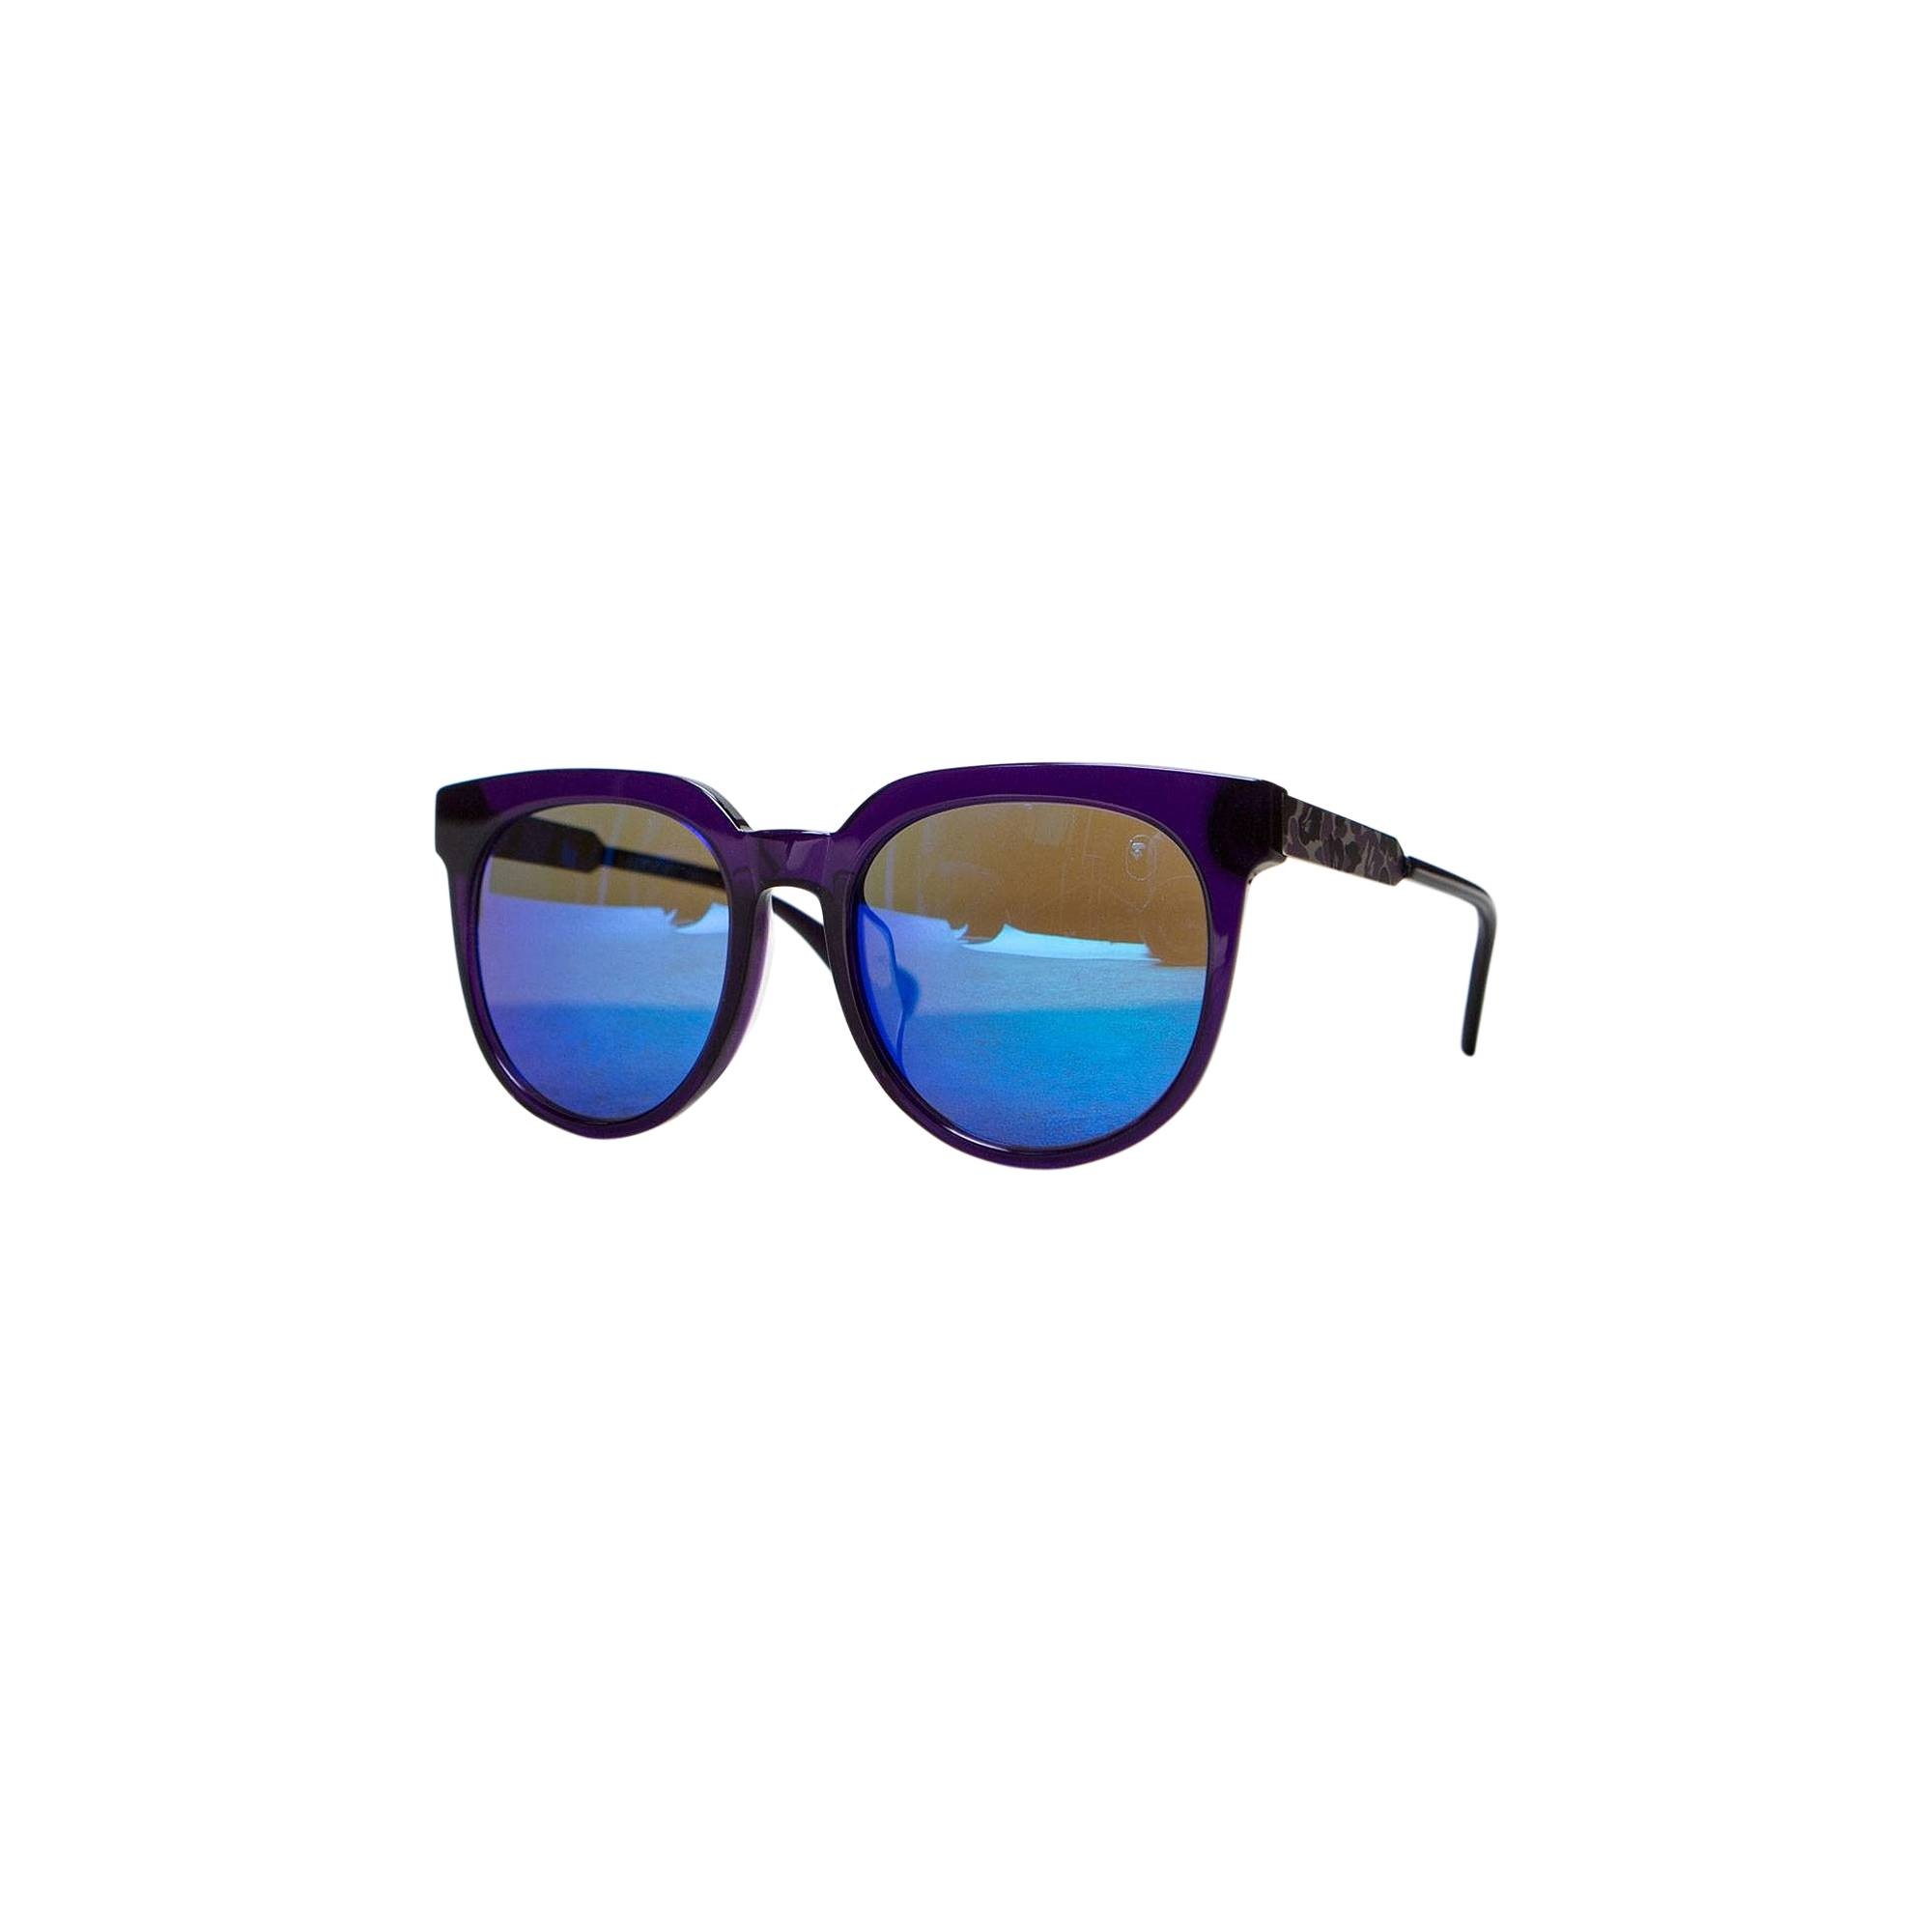 BAPE Sunglasses 'Purple' - 1